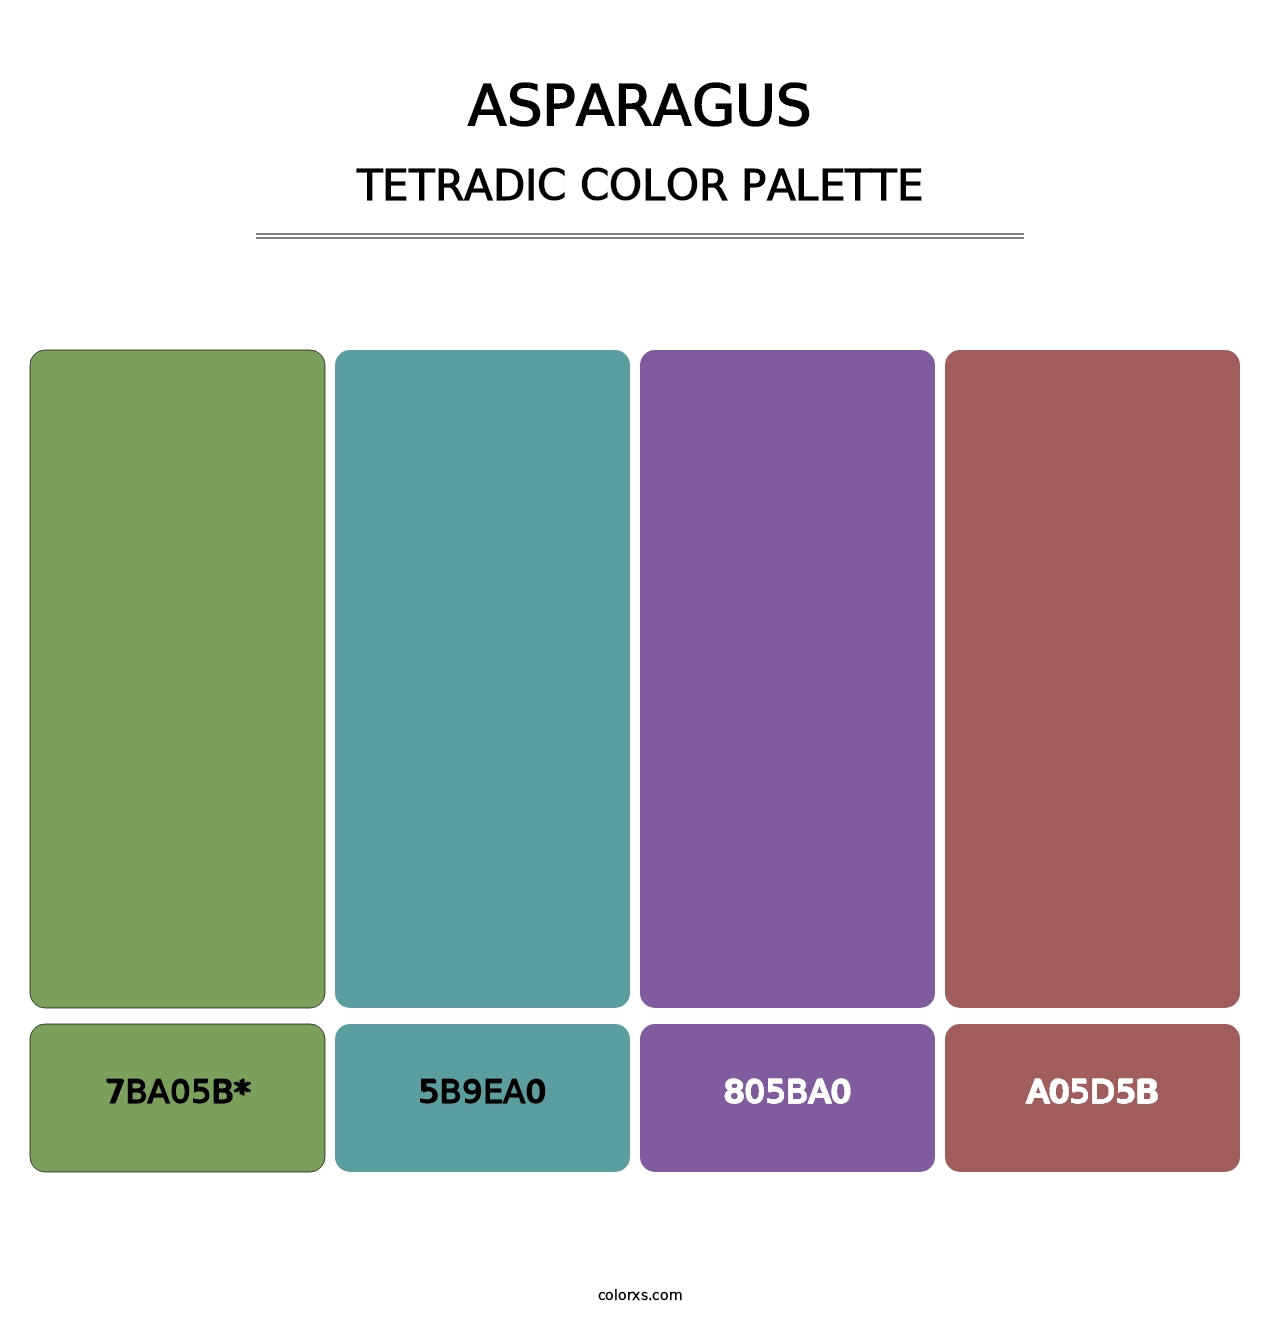 Asparagus - Tetradic Color Palette